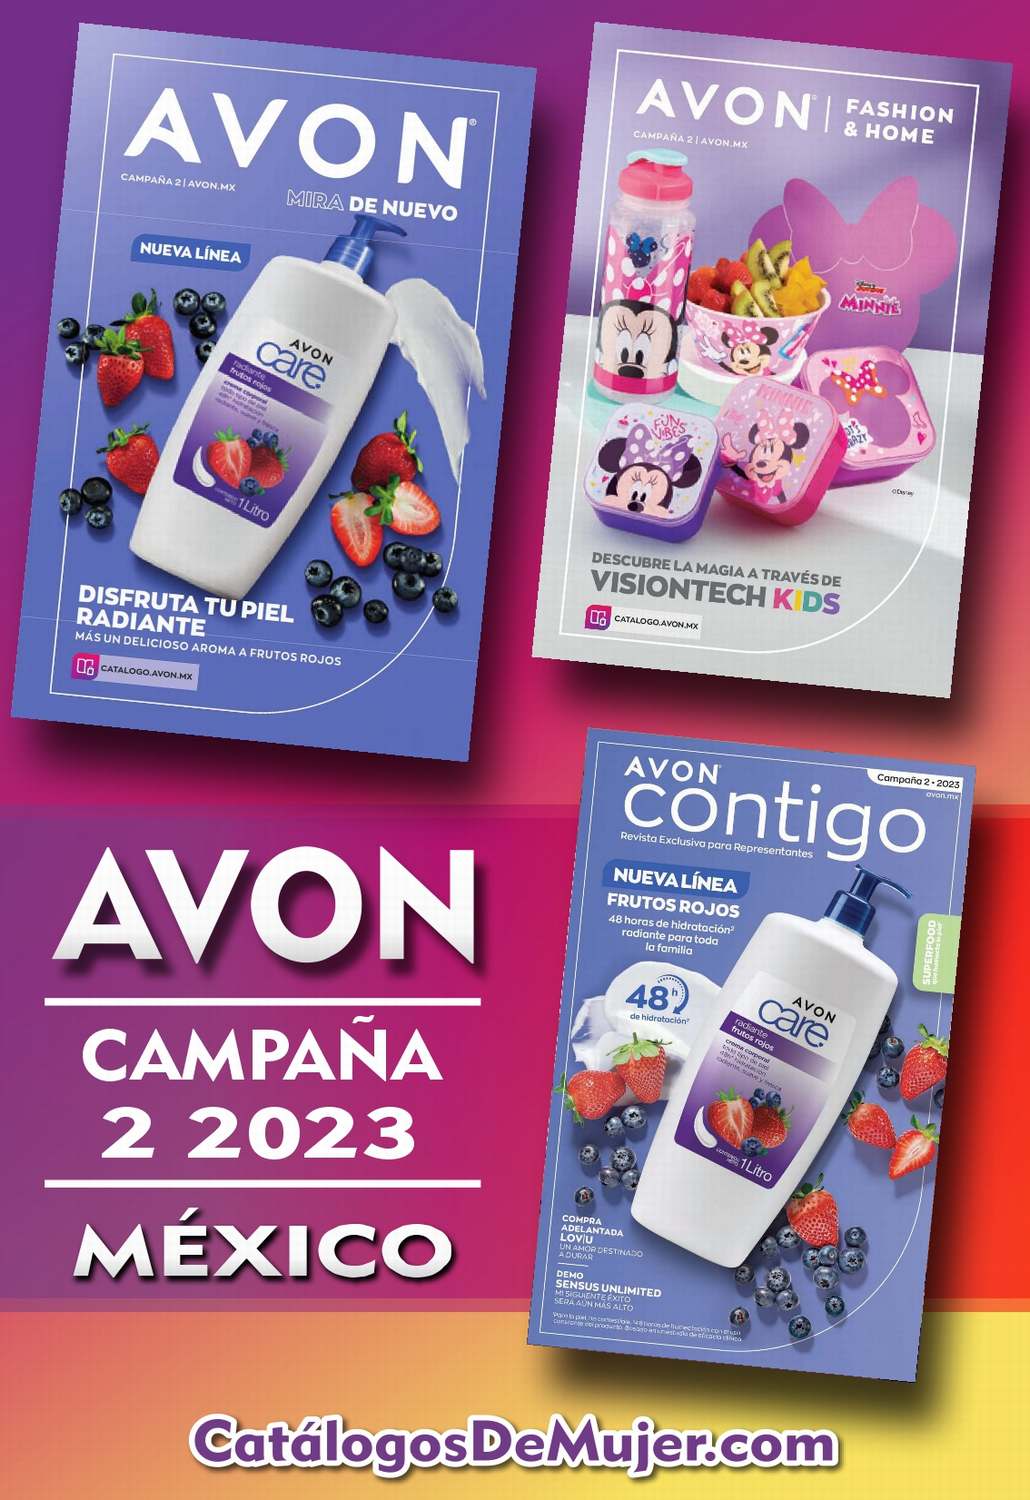 Catalogo Avon Campaña 2 México 2023